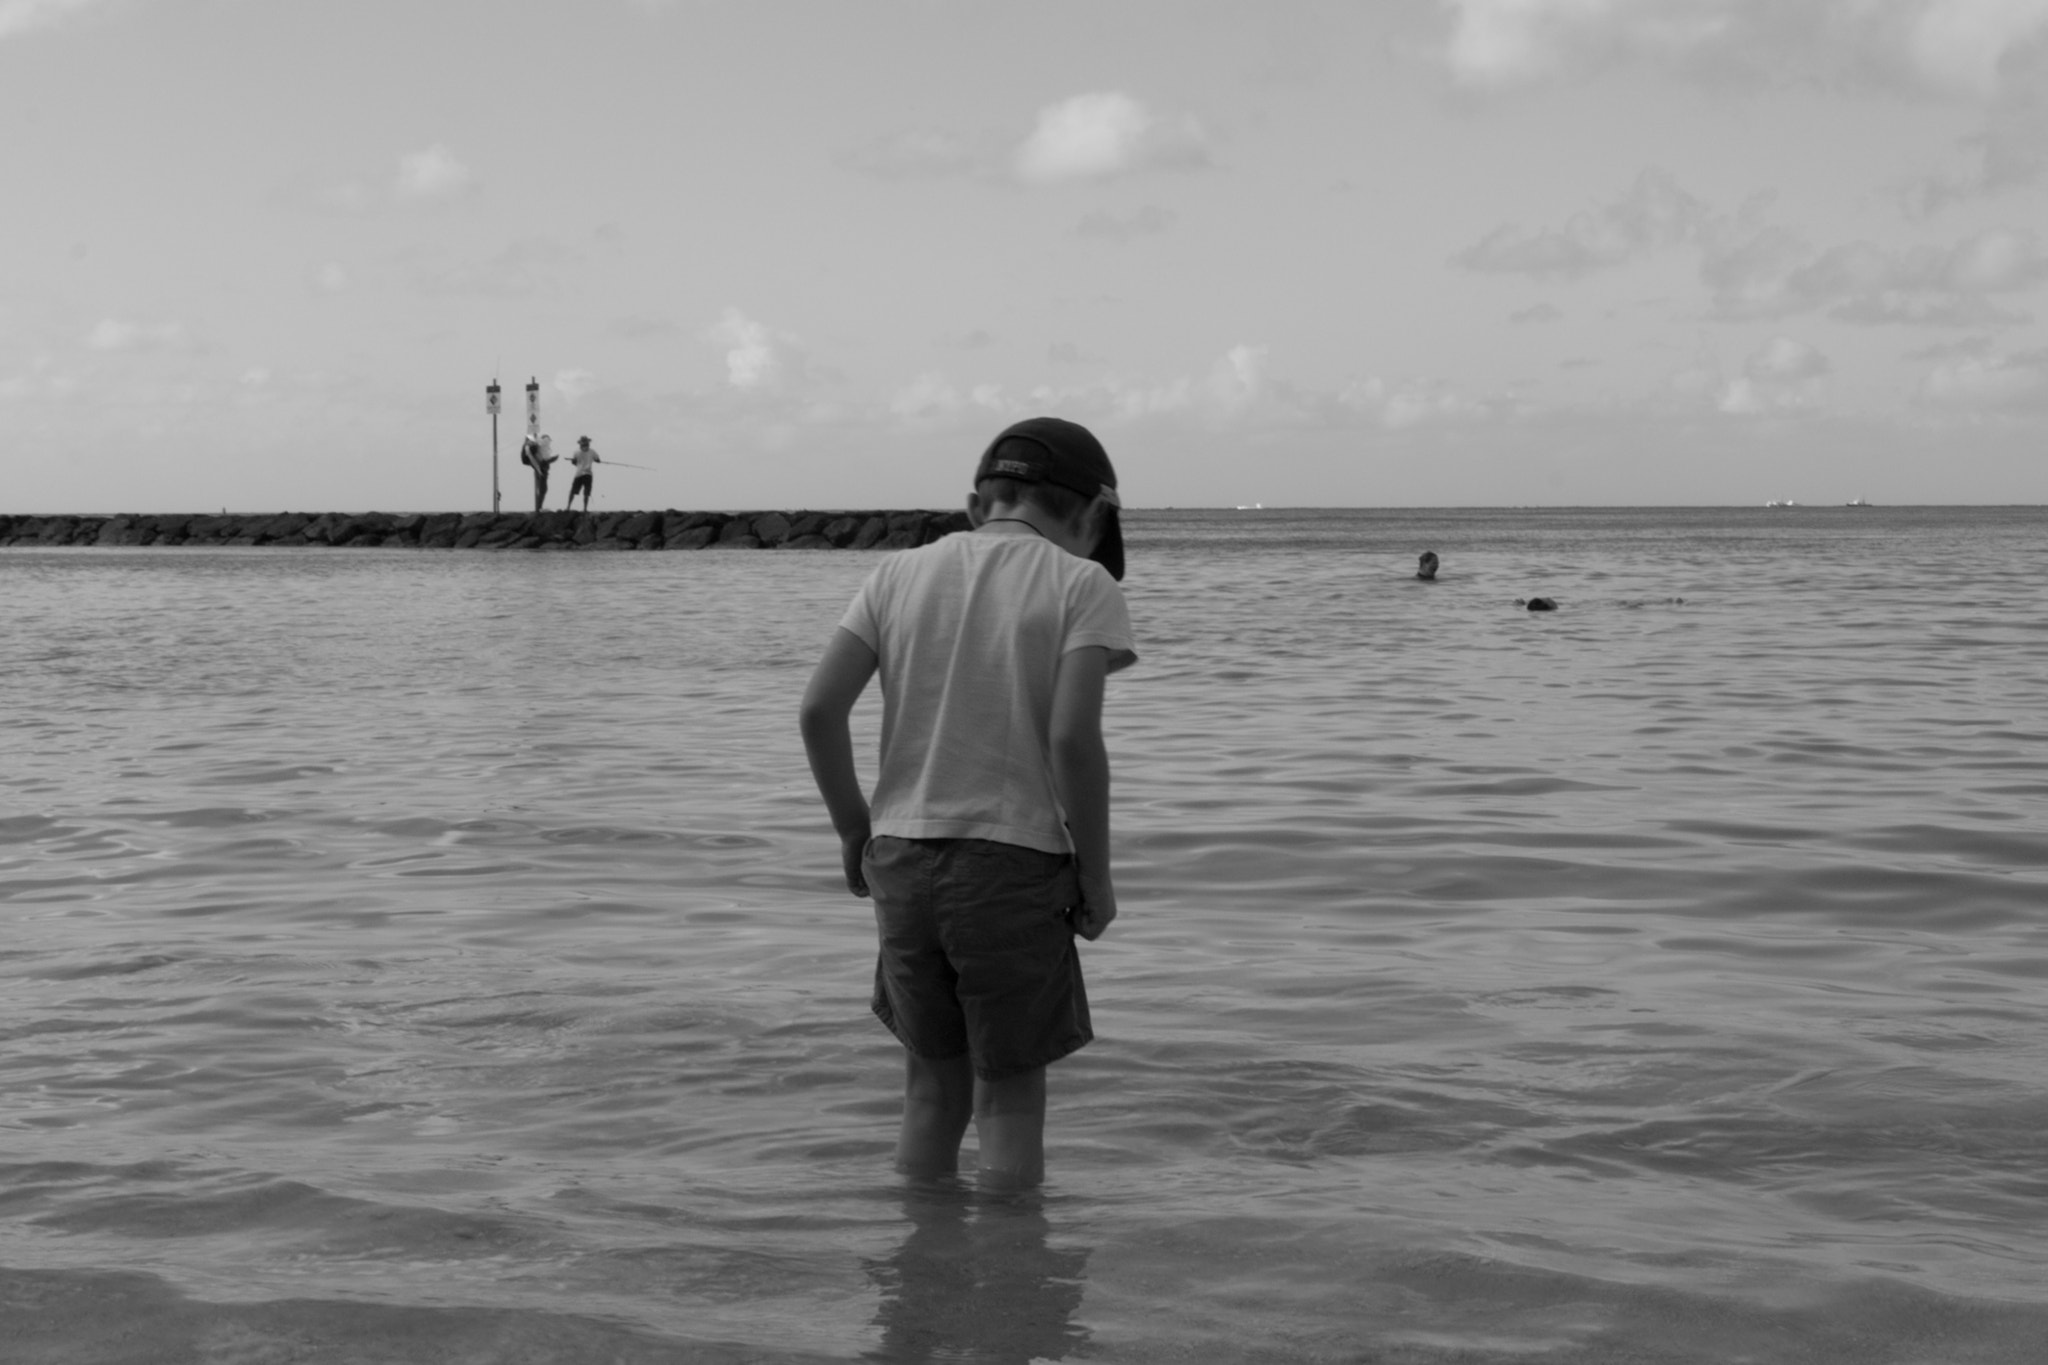 Canon EOS 1200D (EOS Rebel T5 / EOS Kiss X70 / EOS Hi) sample photo. Hawaï, waikiki beach. photography